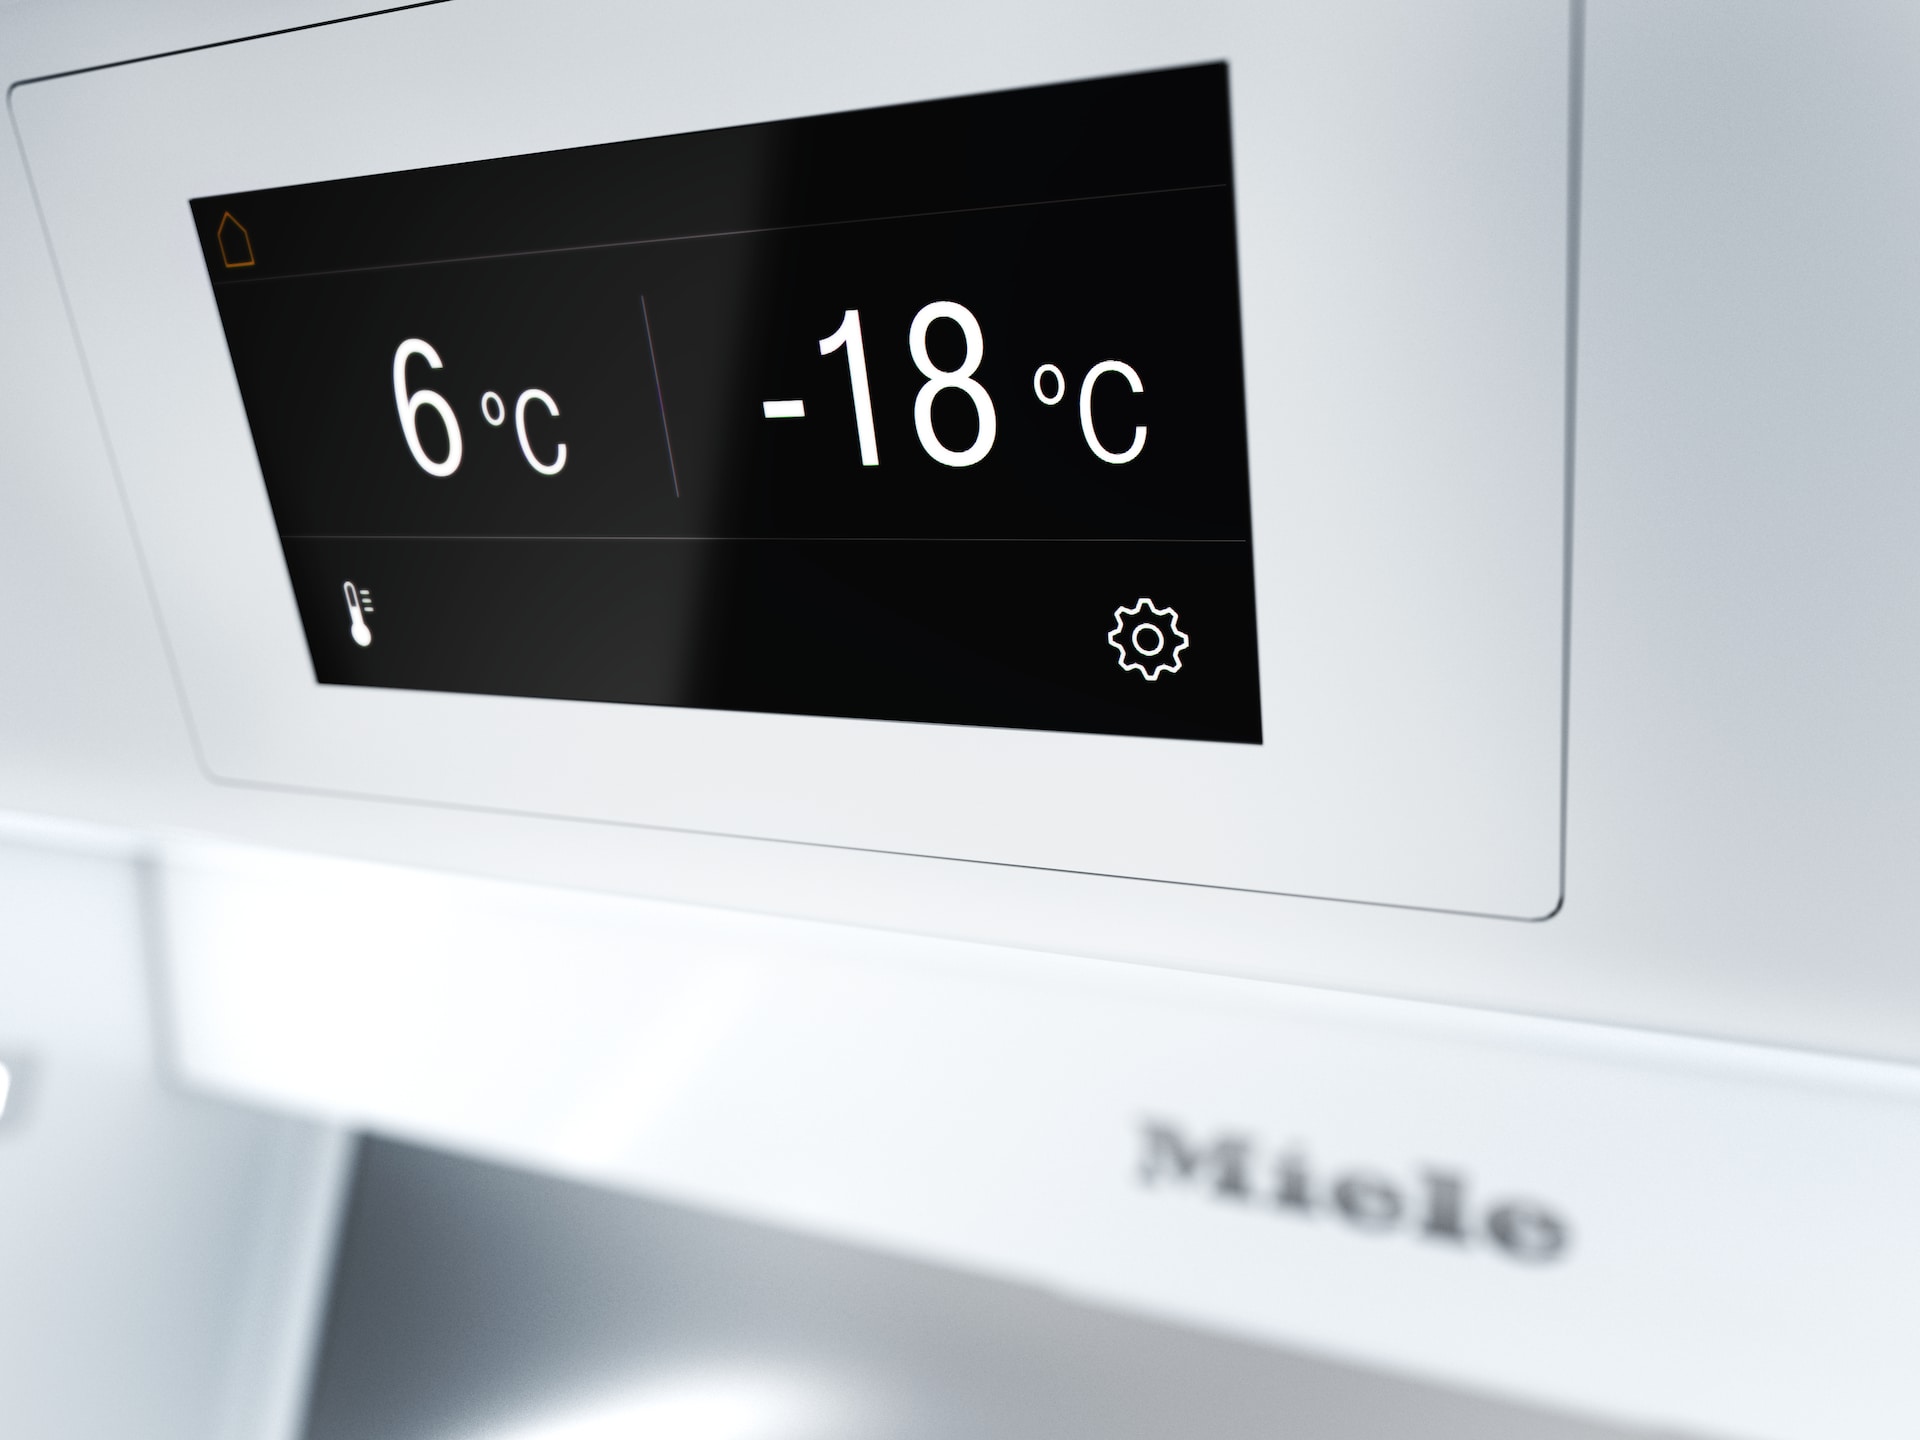 Réfrigérateurs/congélateurs - F 2672 Vi - 5